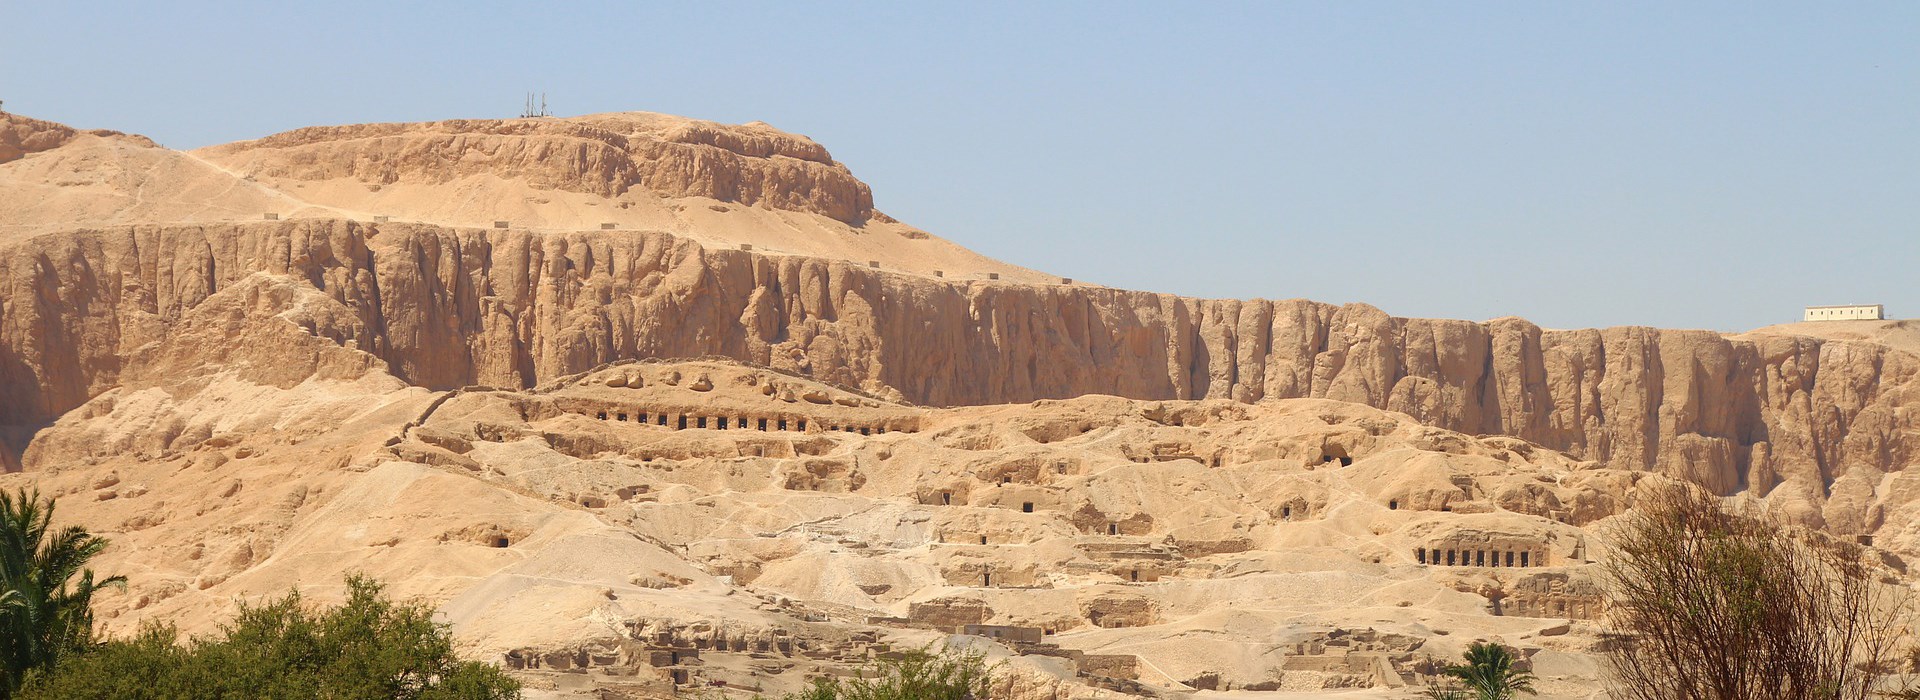 Visiter La Vallée des Rois - Egypte